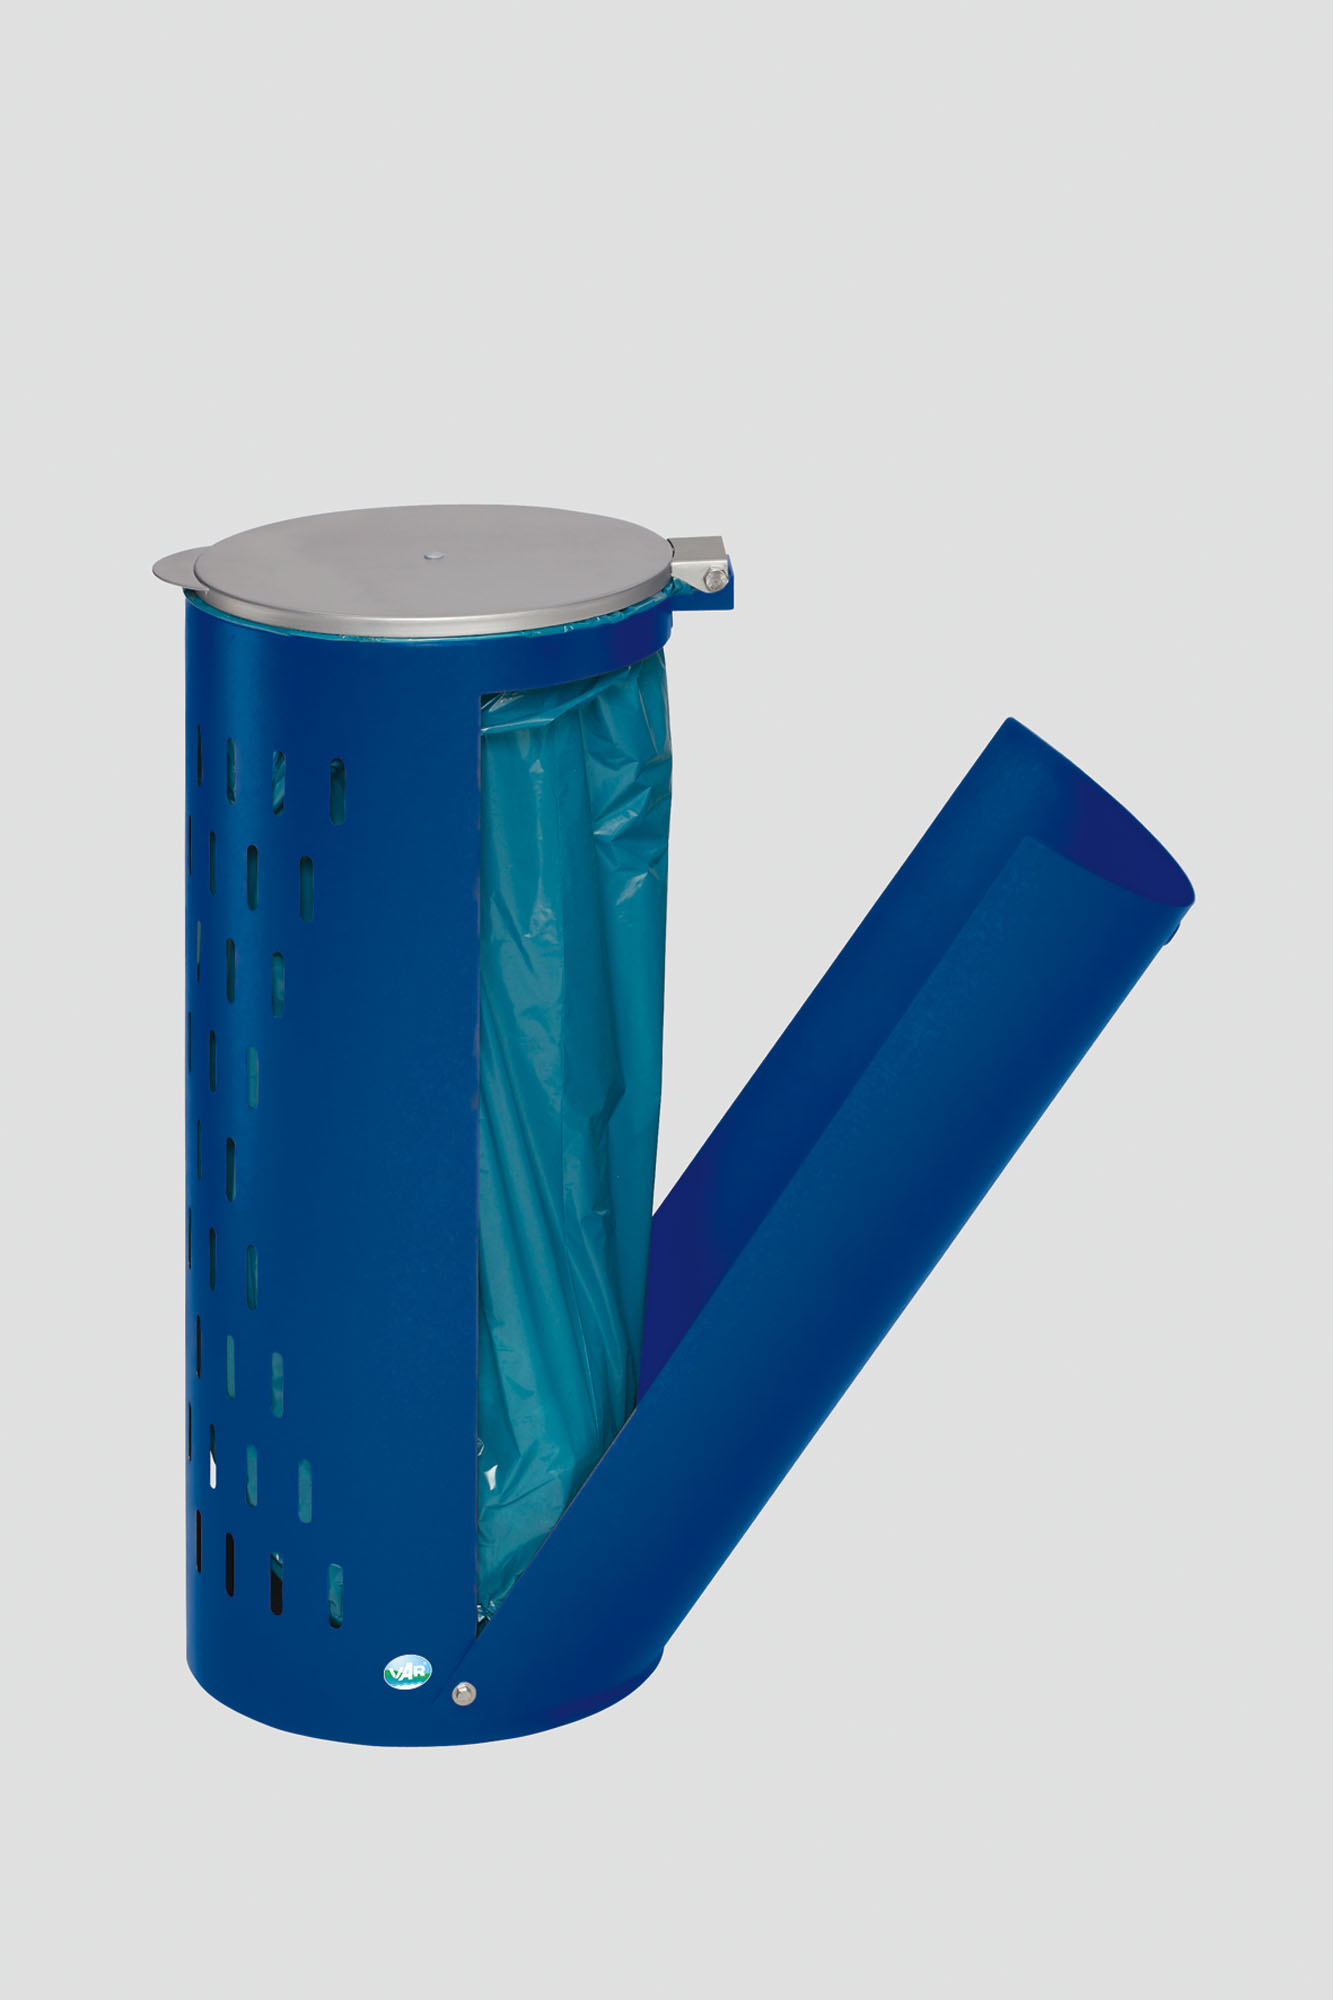 Kompakter Abfallsammler gelocht mit Deckel & Klapptür | 35cm Einfüllöffnung | HxBxT 85x44x44cm | Stahl | Blau